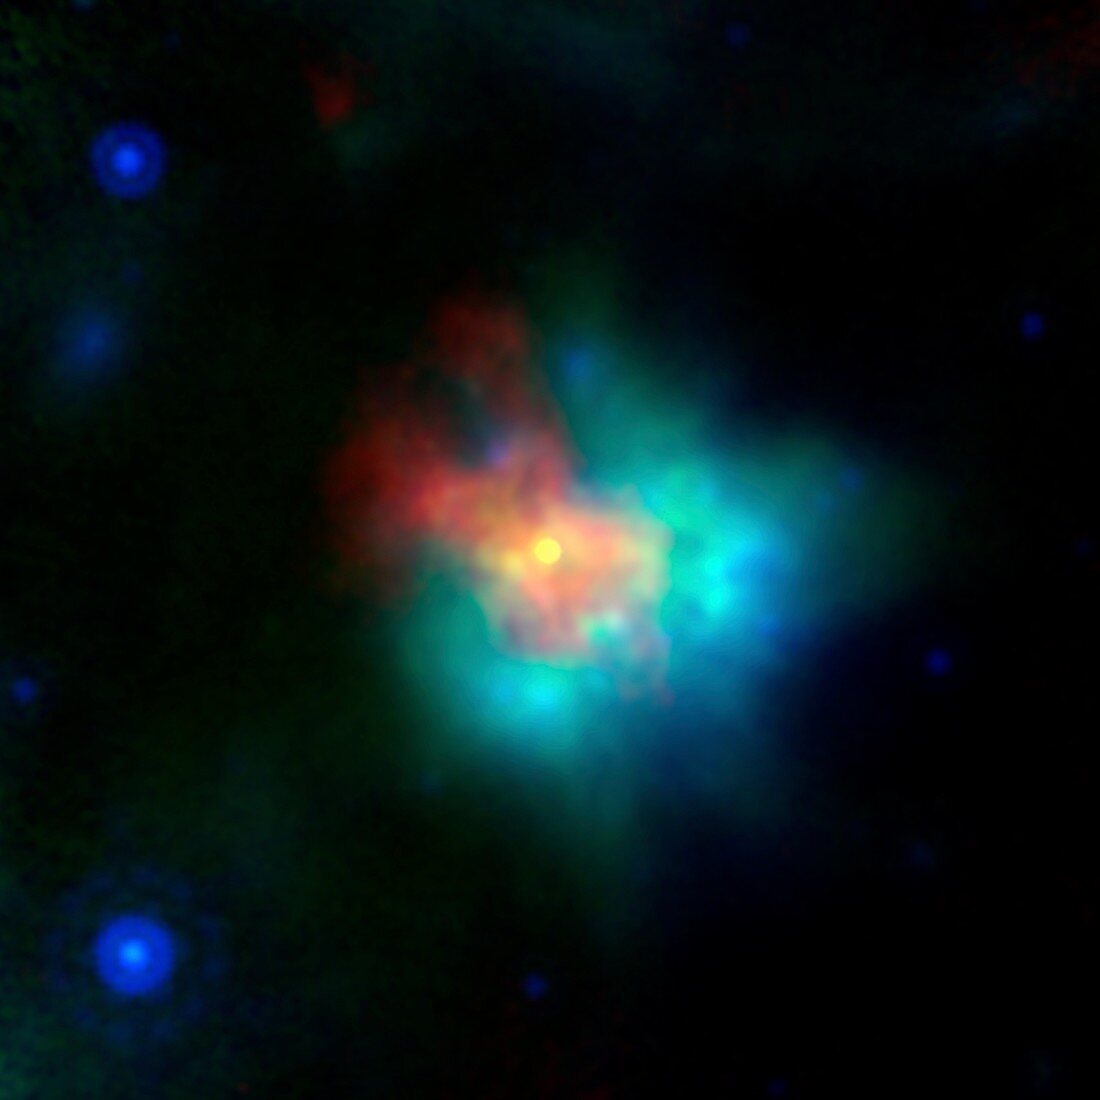 Supernova remnant G54